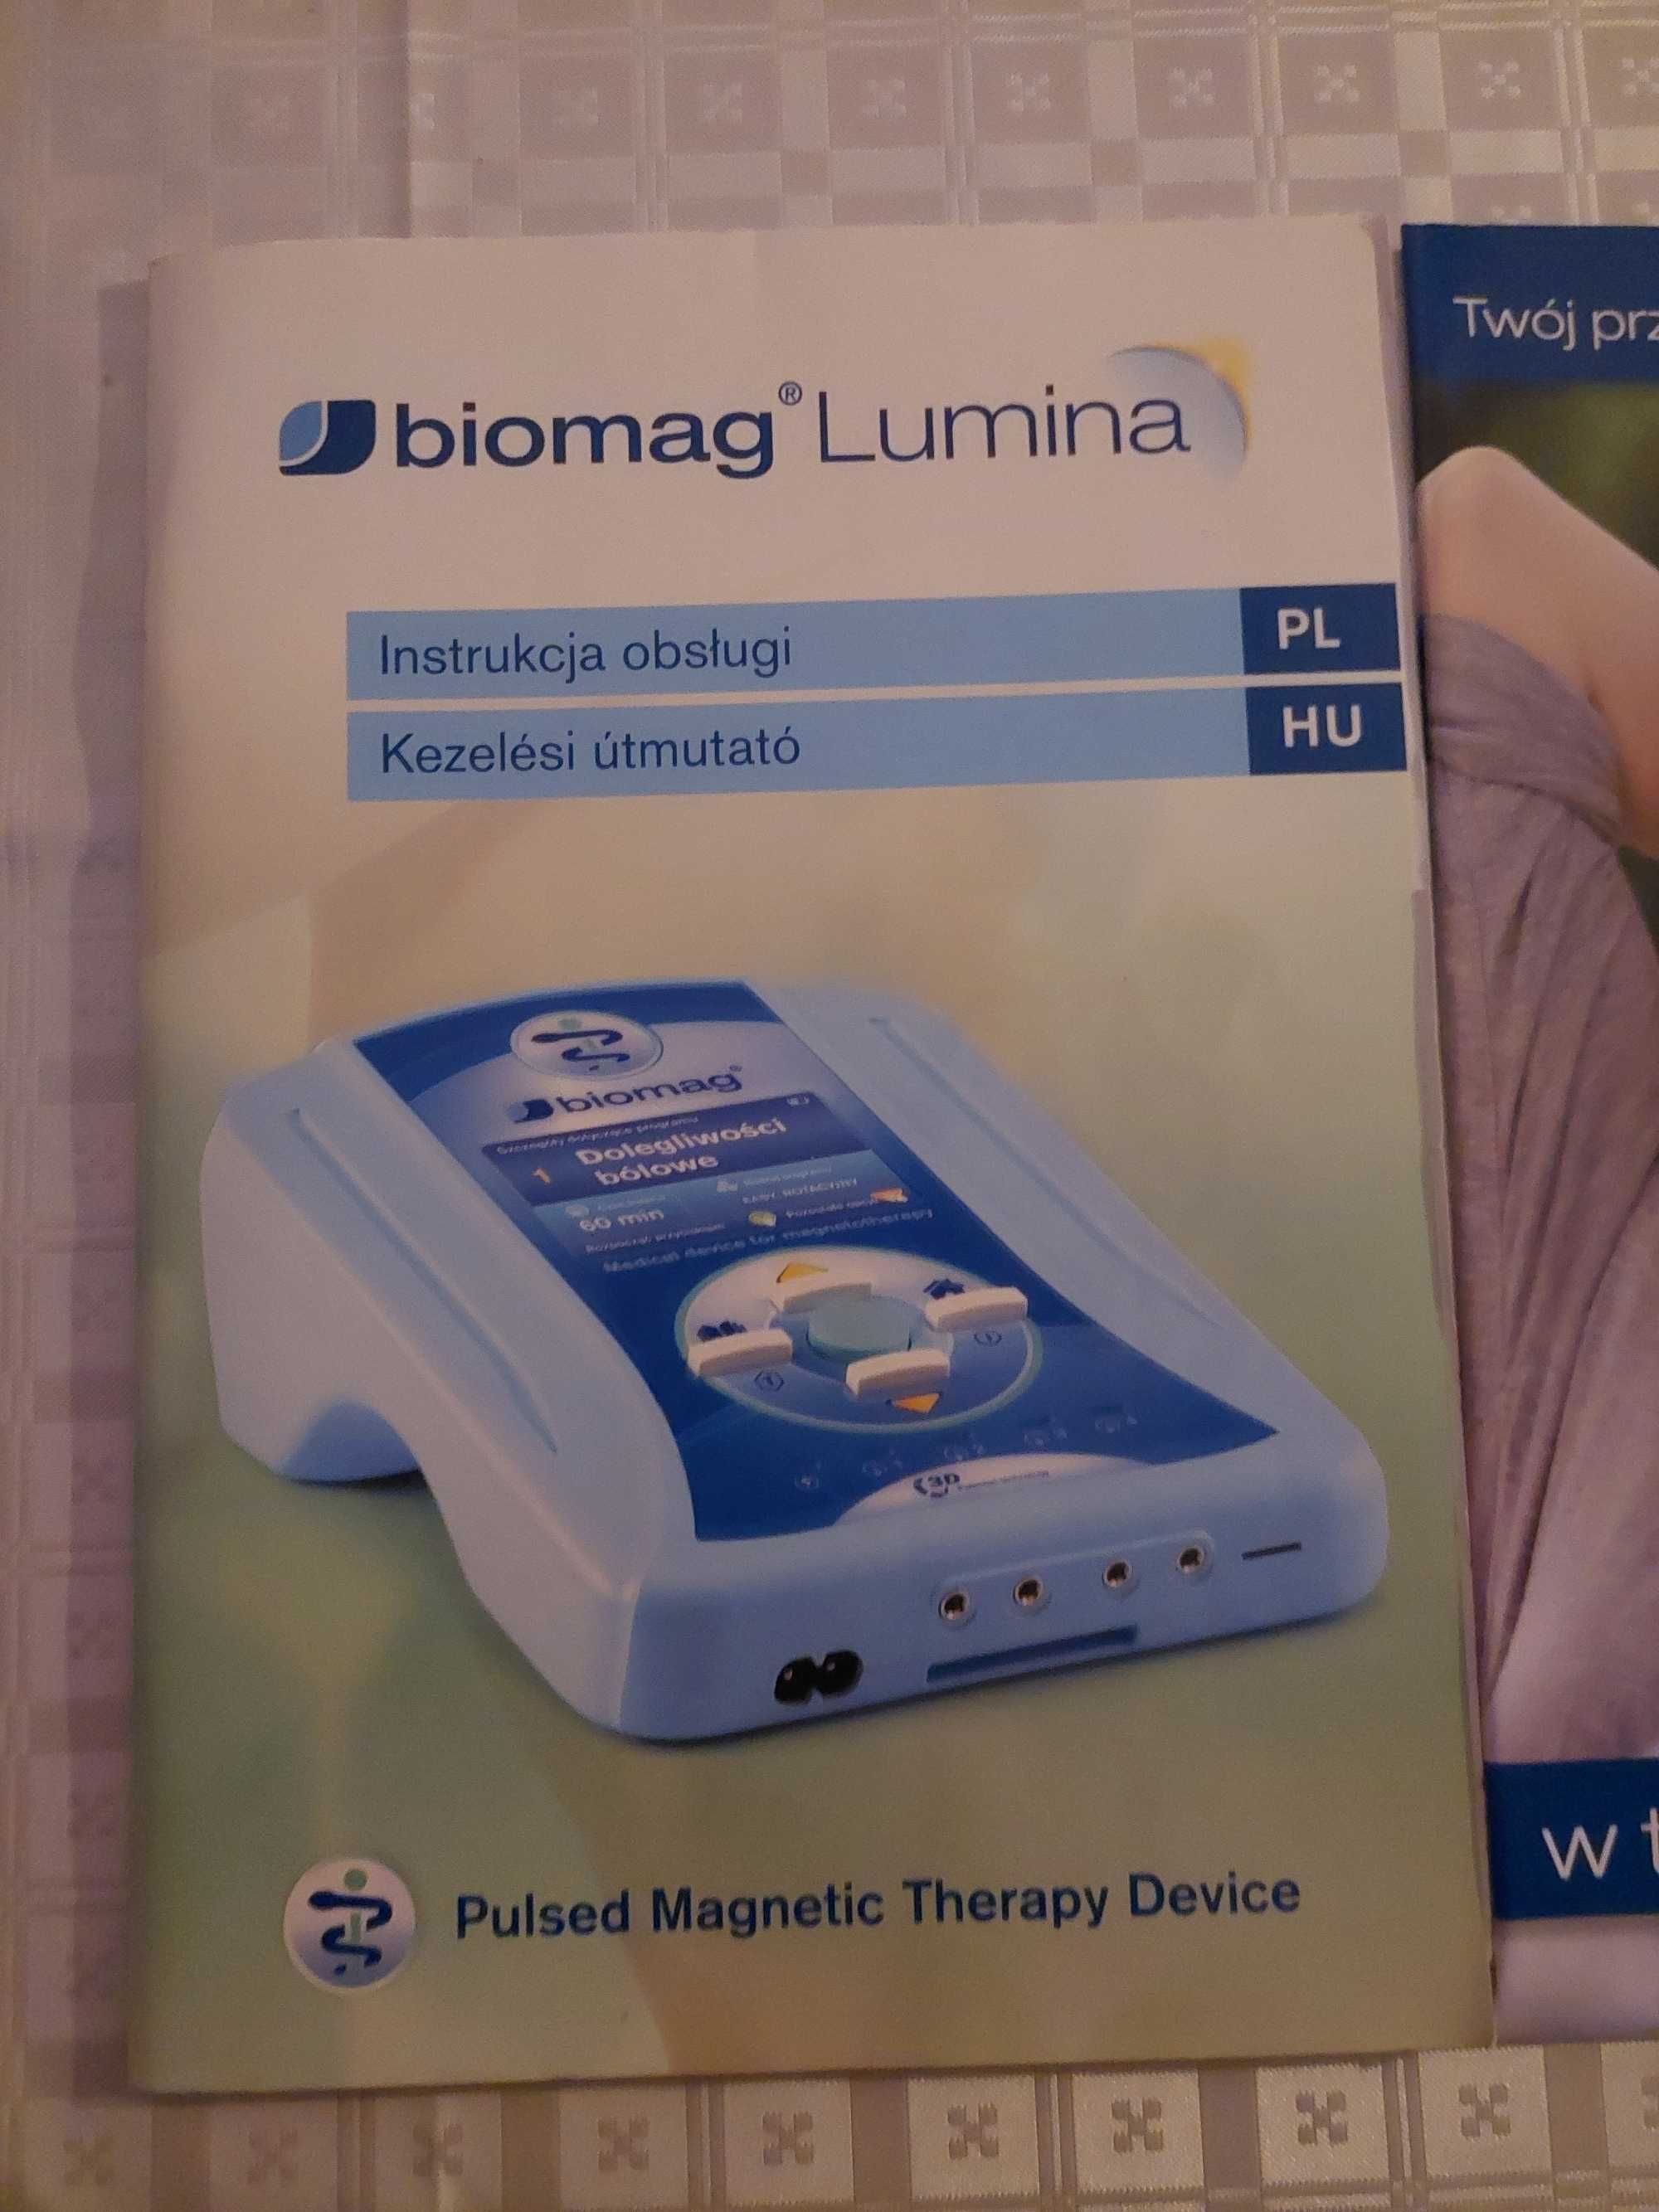 Biomag lumina - urządzenie do magnetoterapii